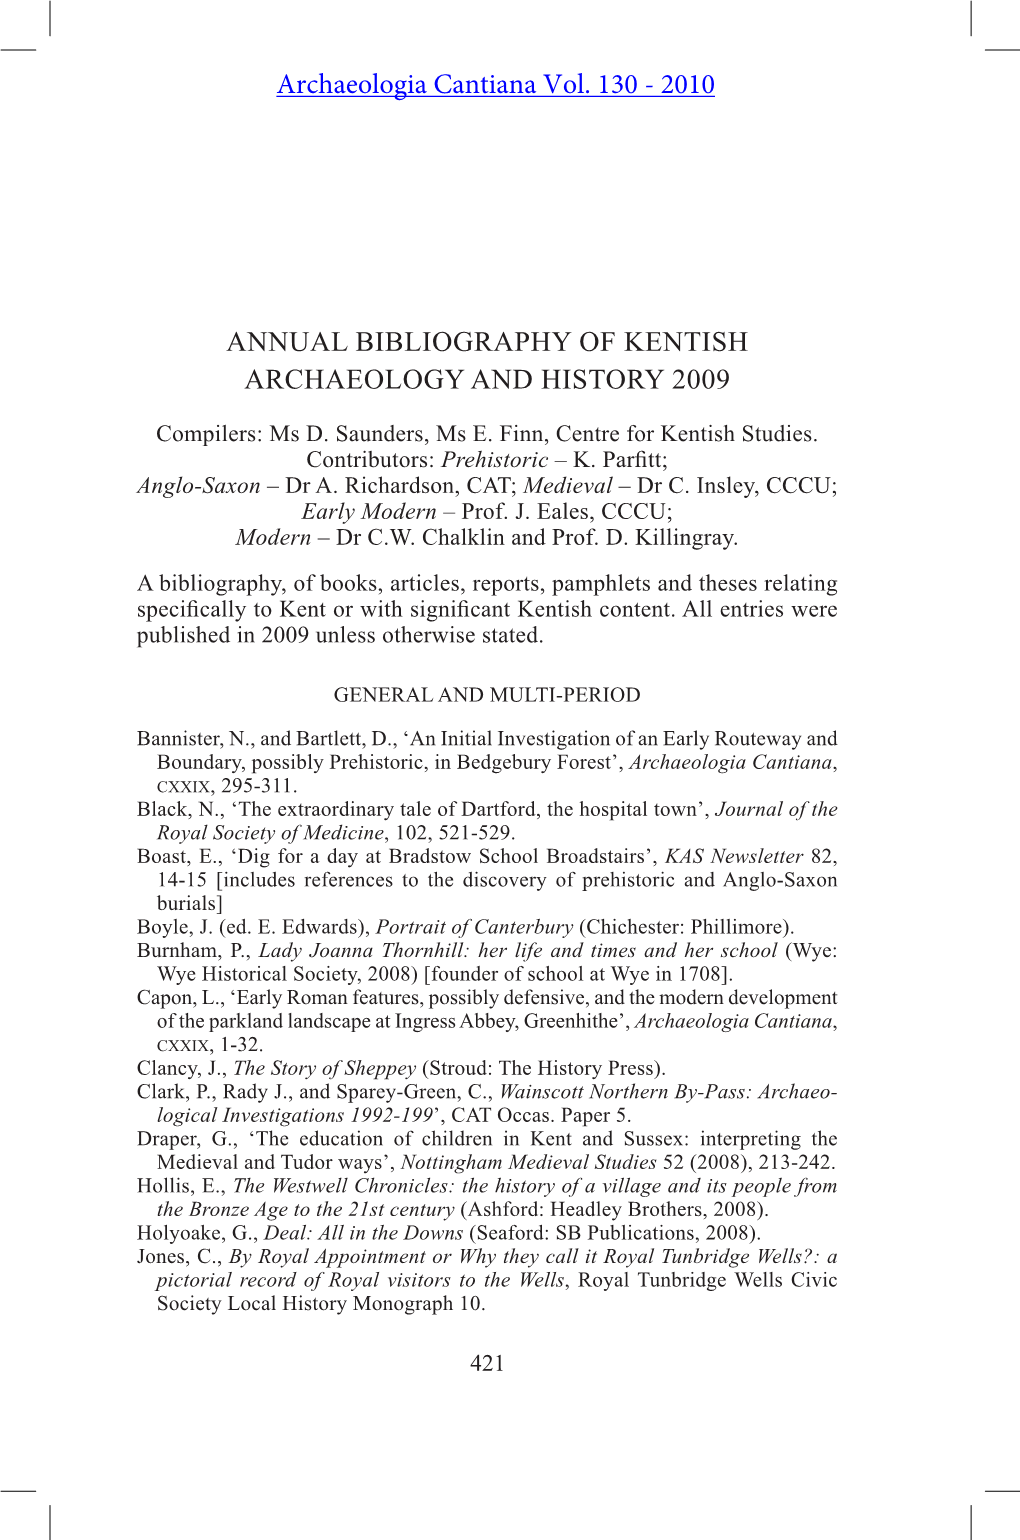 Kentish Bibliography 2009